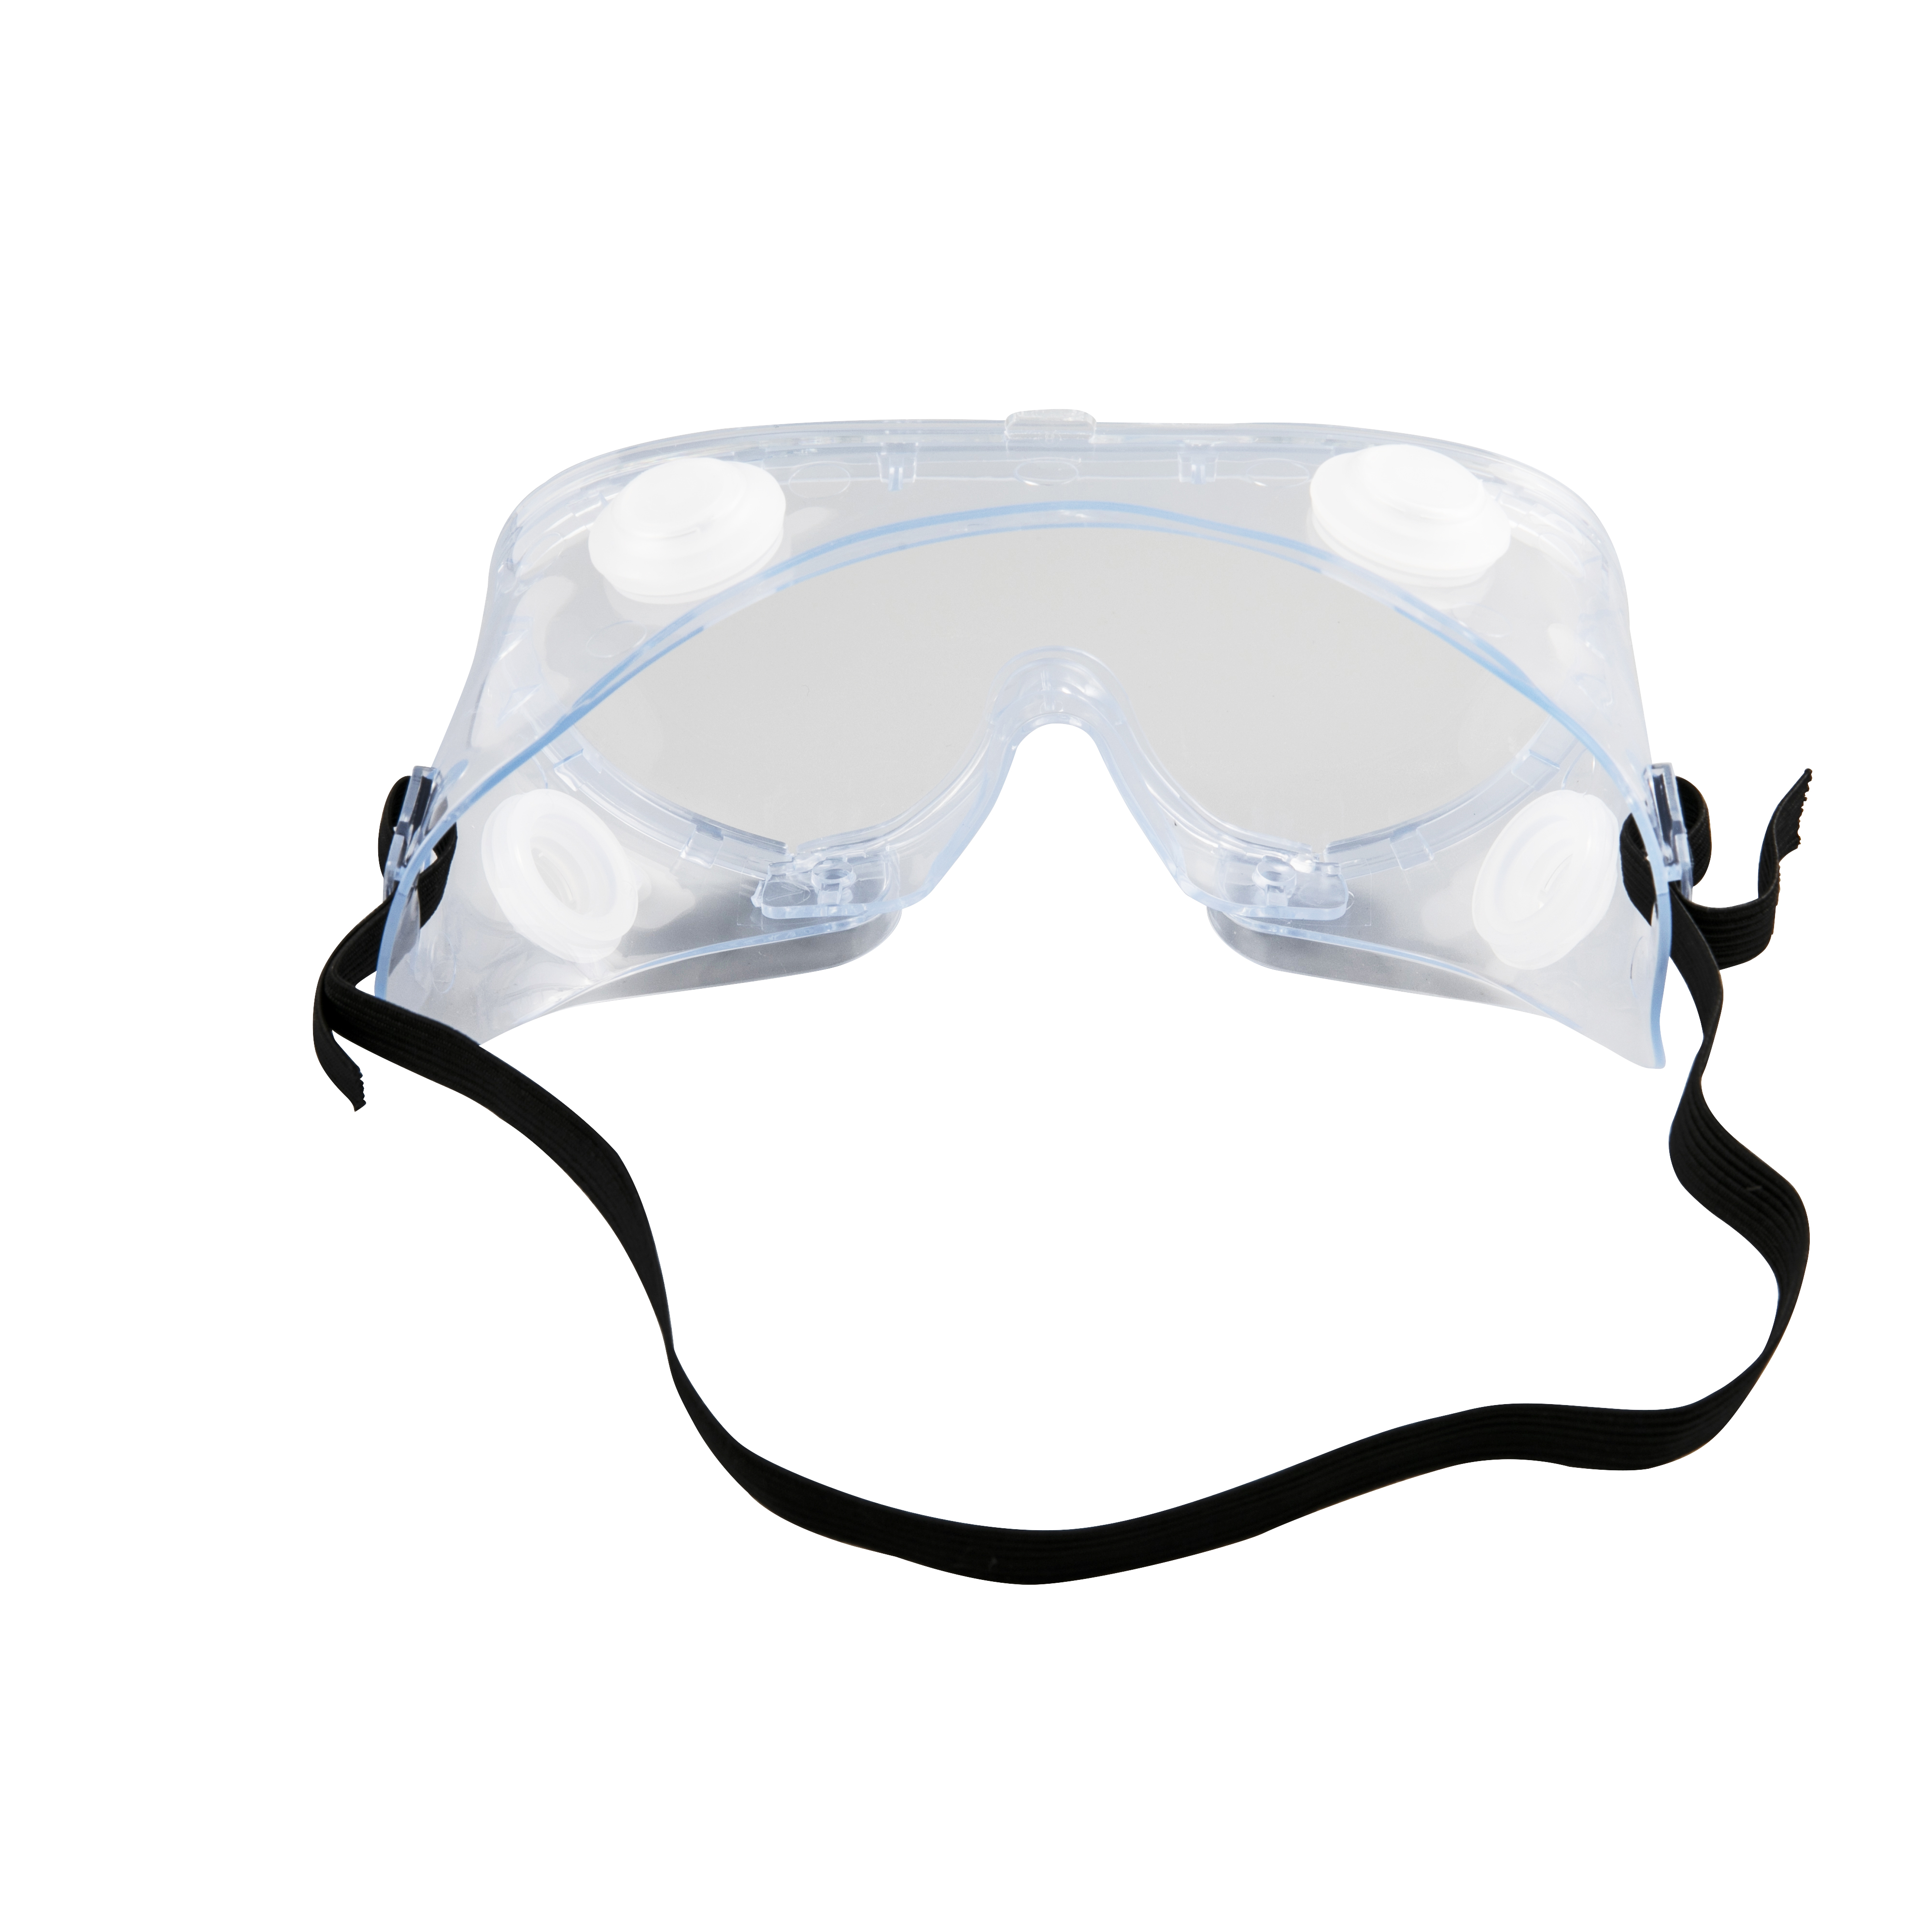 Goggles Mripat Protective Medical